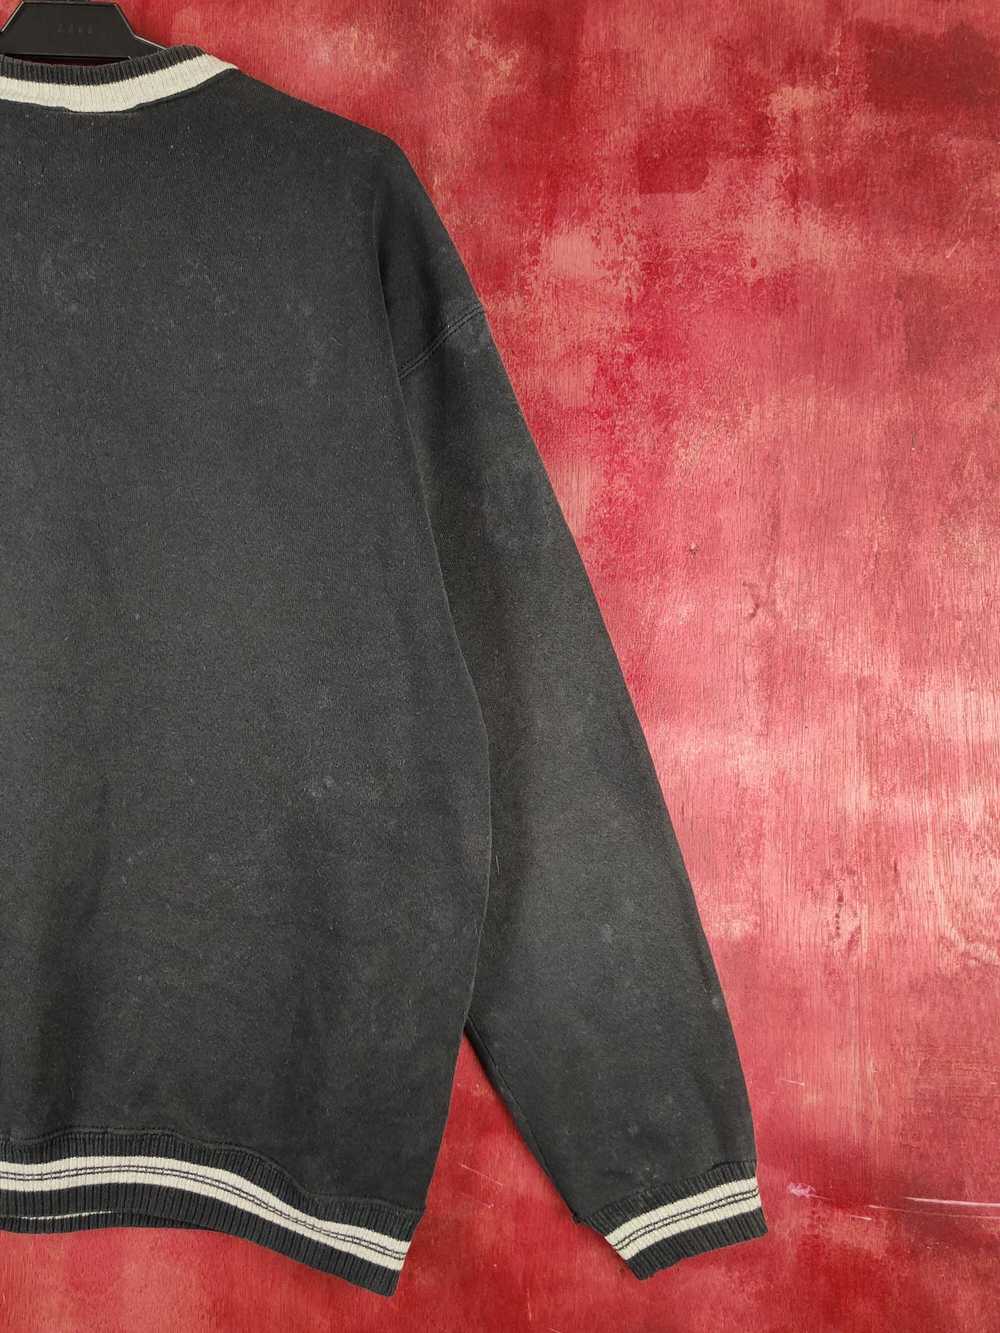 Streetwear × Vintage Discus Black Faded Sweatshir… - image 9